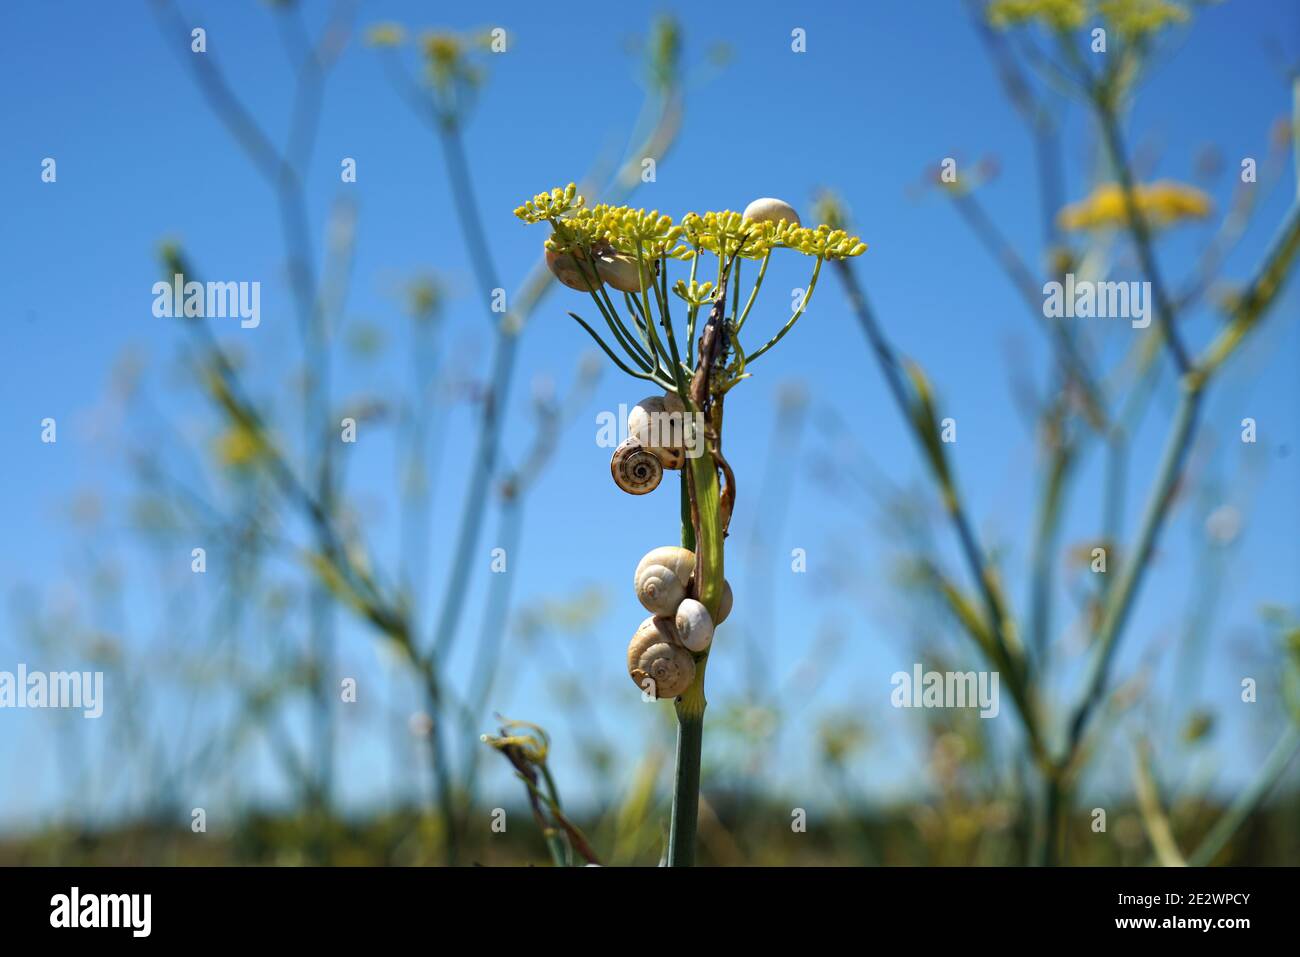 Gros plan d'escargots sur une fleur jaune dans un champ Banque D'Images